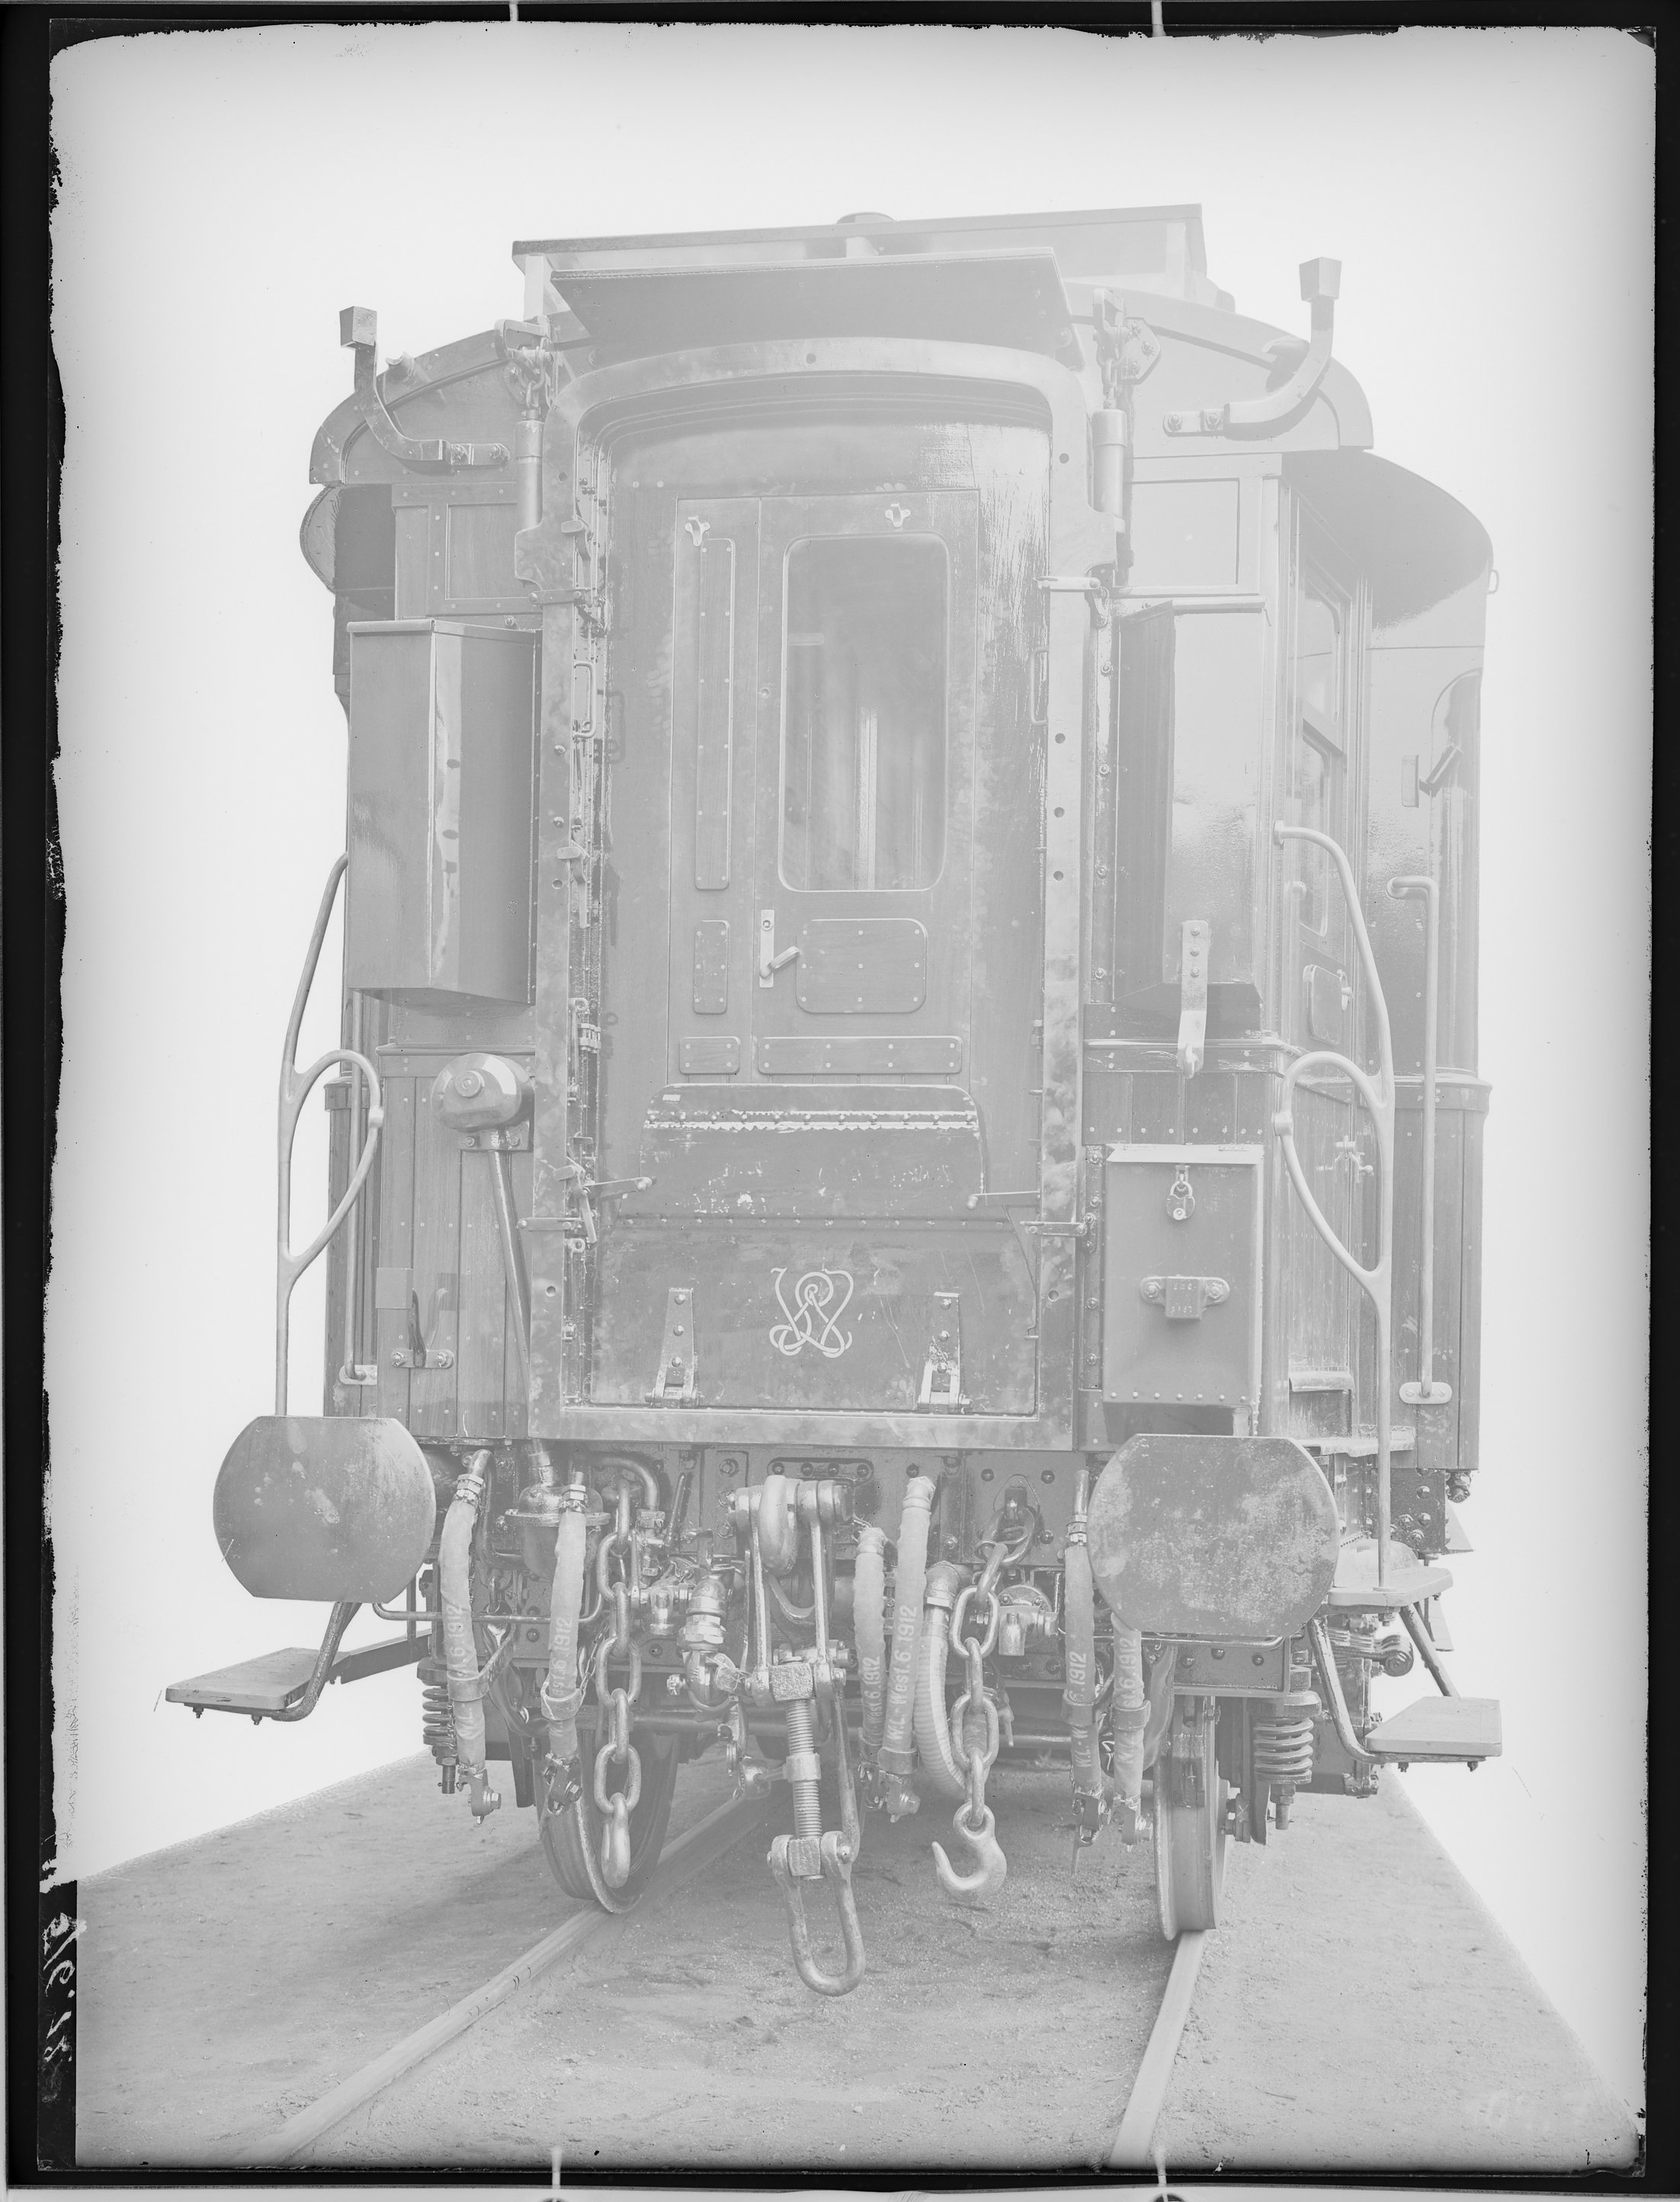 Fotografie: Speisewagen (Stirnansicht), 1912. Internationale Schlafwagen-Gesellschaft (Compagnie Internationale des Wagons-Lits - CIWL)? (Verkehrsmuseum Dresden CC BY-NC-SA)